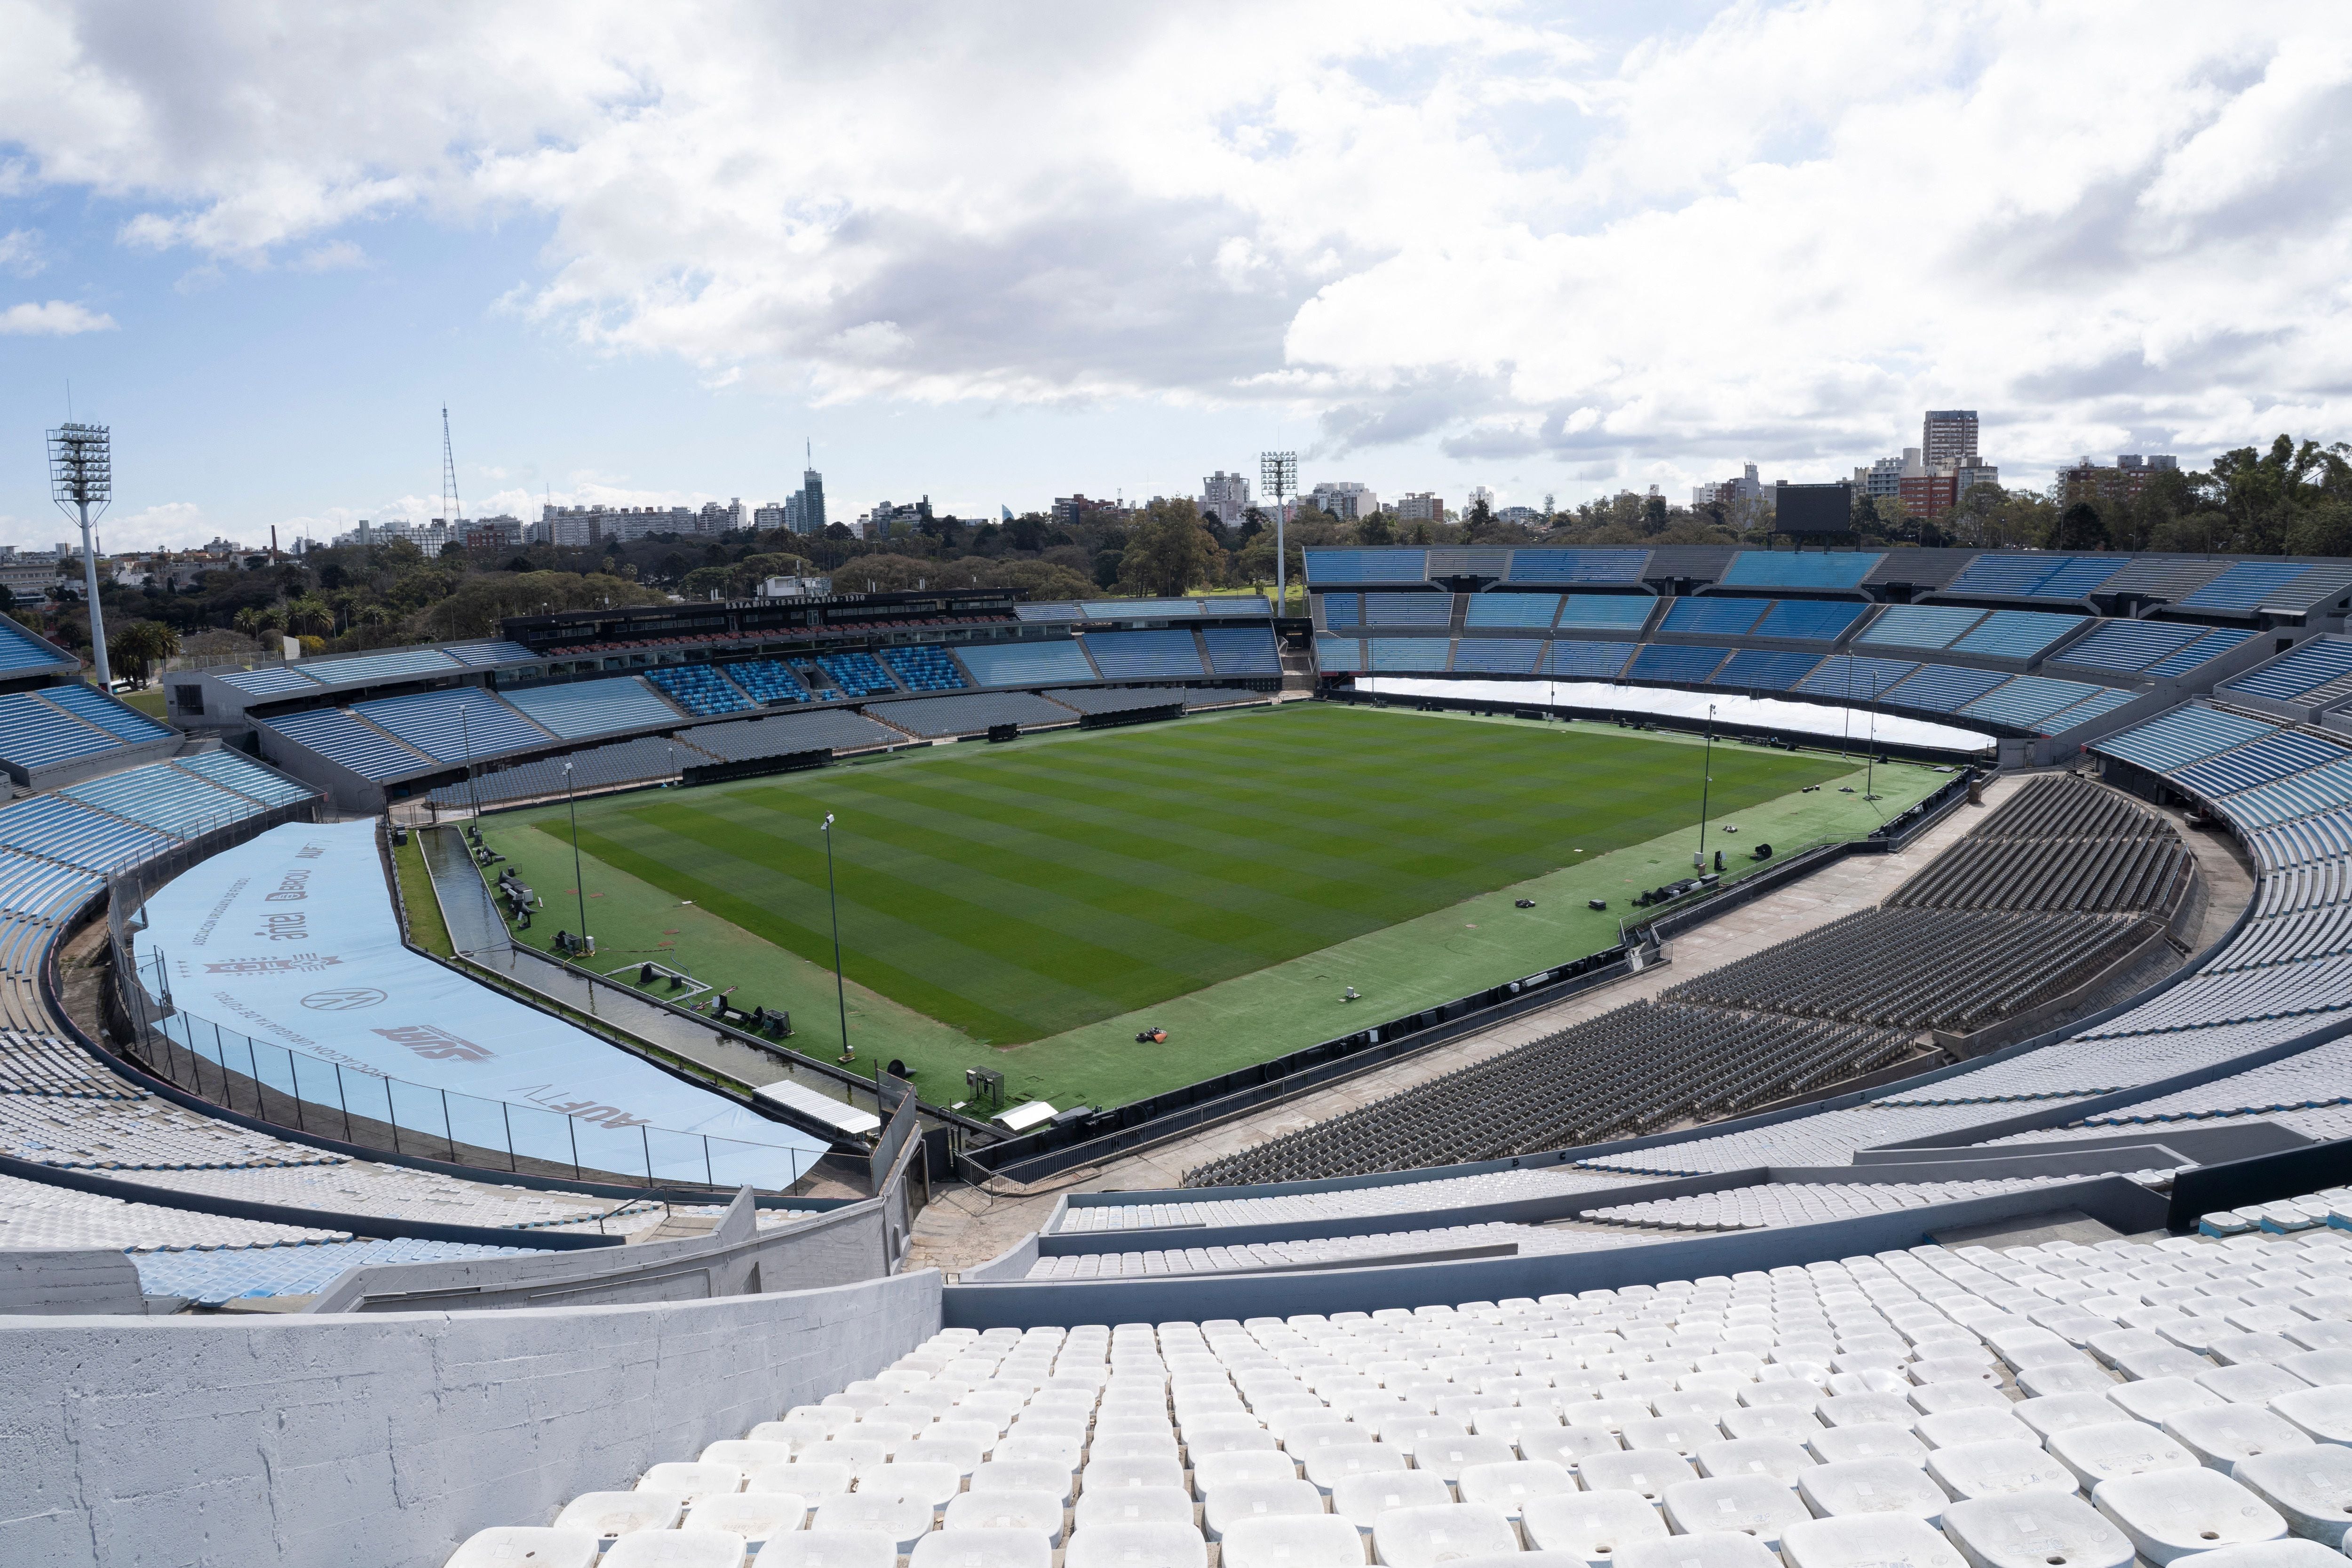 El Estadio Centenario de Montevideo (Uruguay) será sede de la inauguración del Mundial 2030 como reconocimiento por haber albergado la primera Copa del Mundo de 1930 (Foto: Reuters/Andres Cuenca Olaondo)